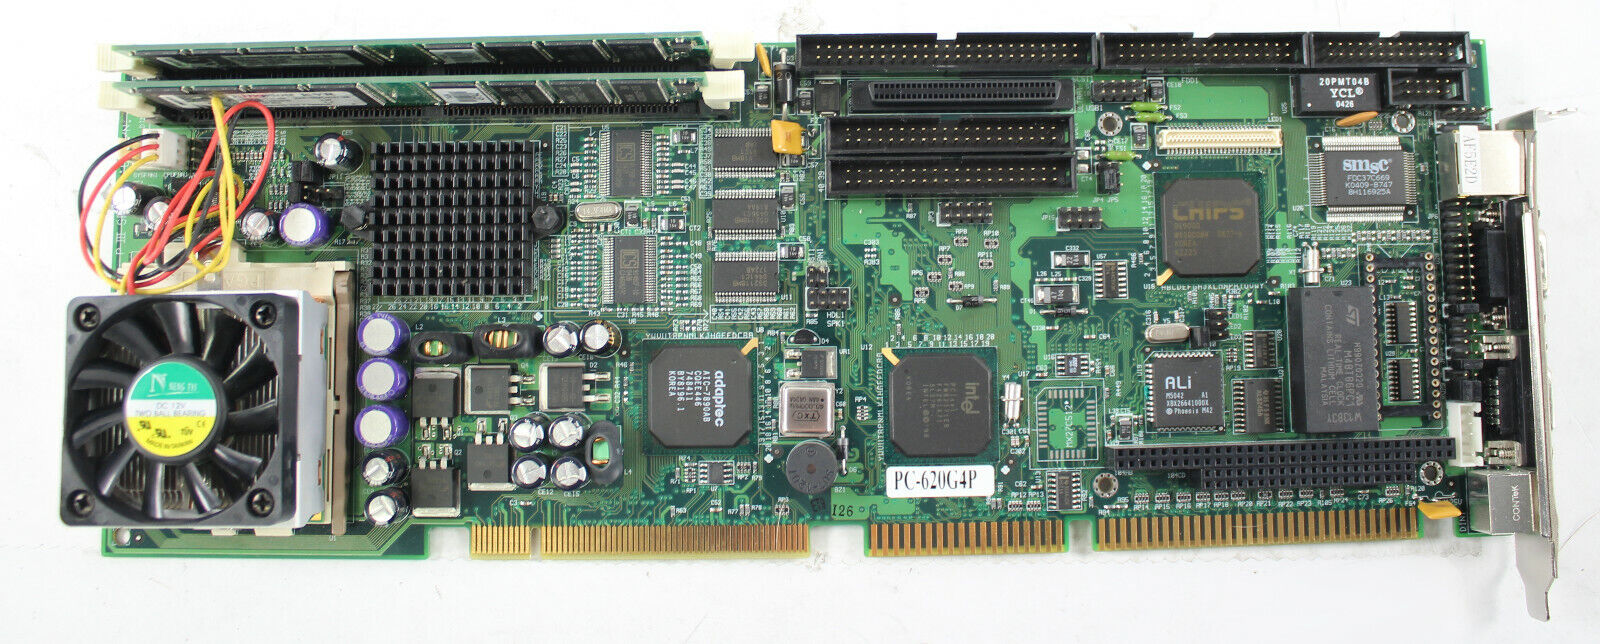 Nice Systems SBC P-III 620-G4D w/ 2x 128MB SDRAM, 1x Intel Pentium III CPU